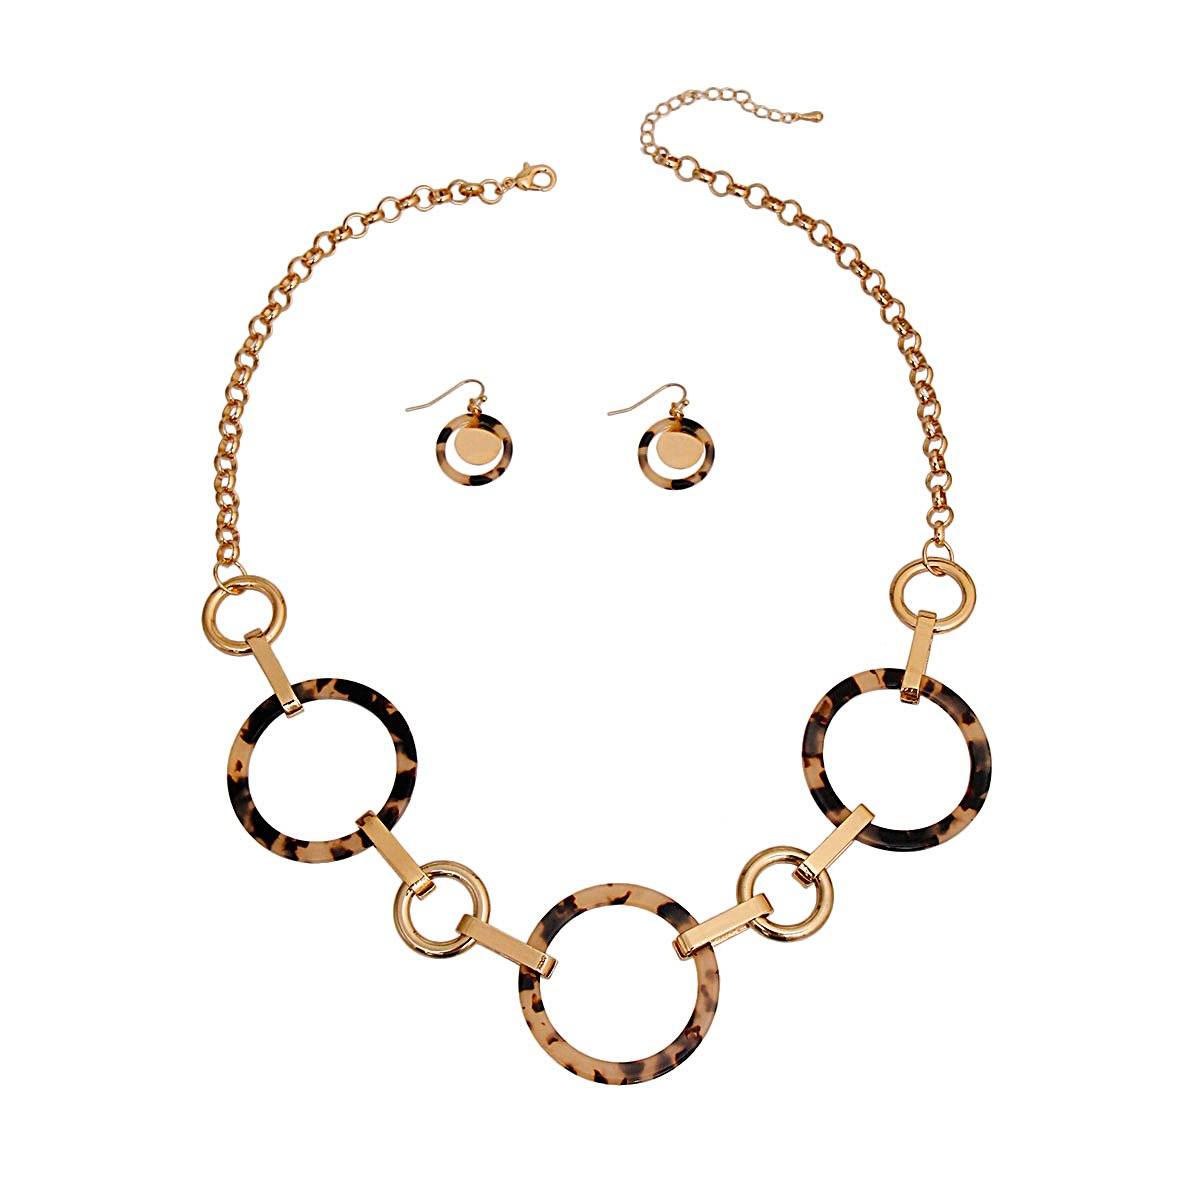 Gold Round Link Tortoiseshell Necklace Set